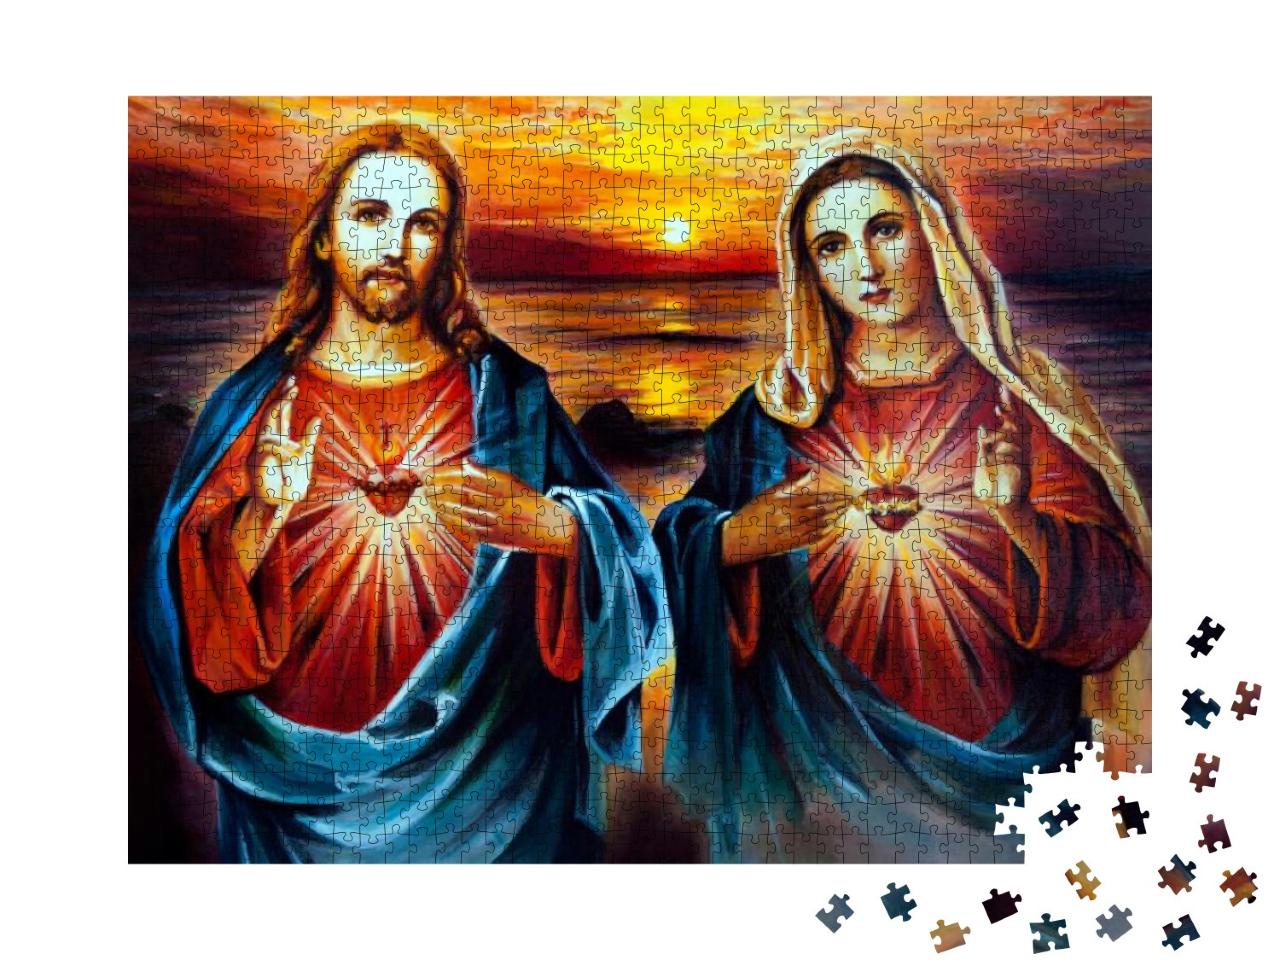 Puzzle 1000 Teile „Jesus Christus und Maria mit Herz, ein Ölgemälde“